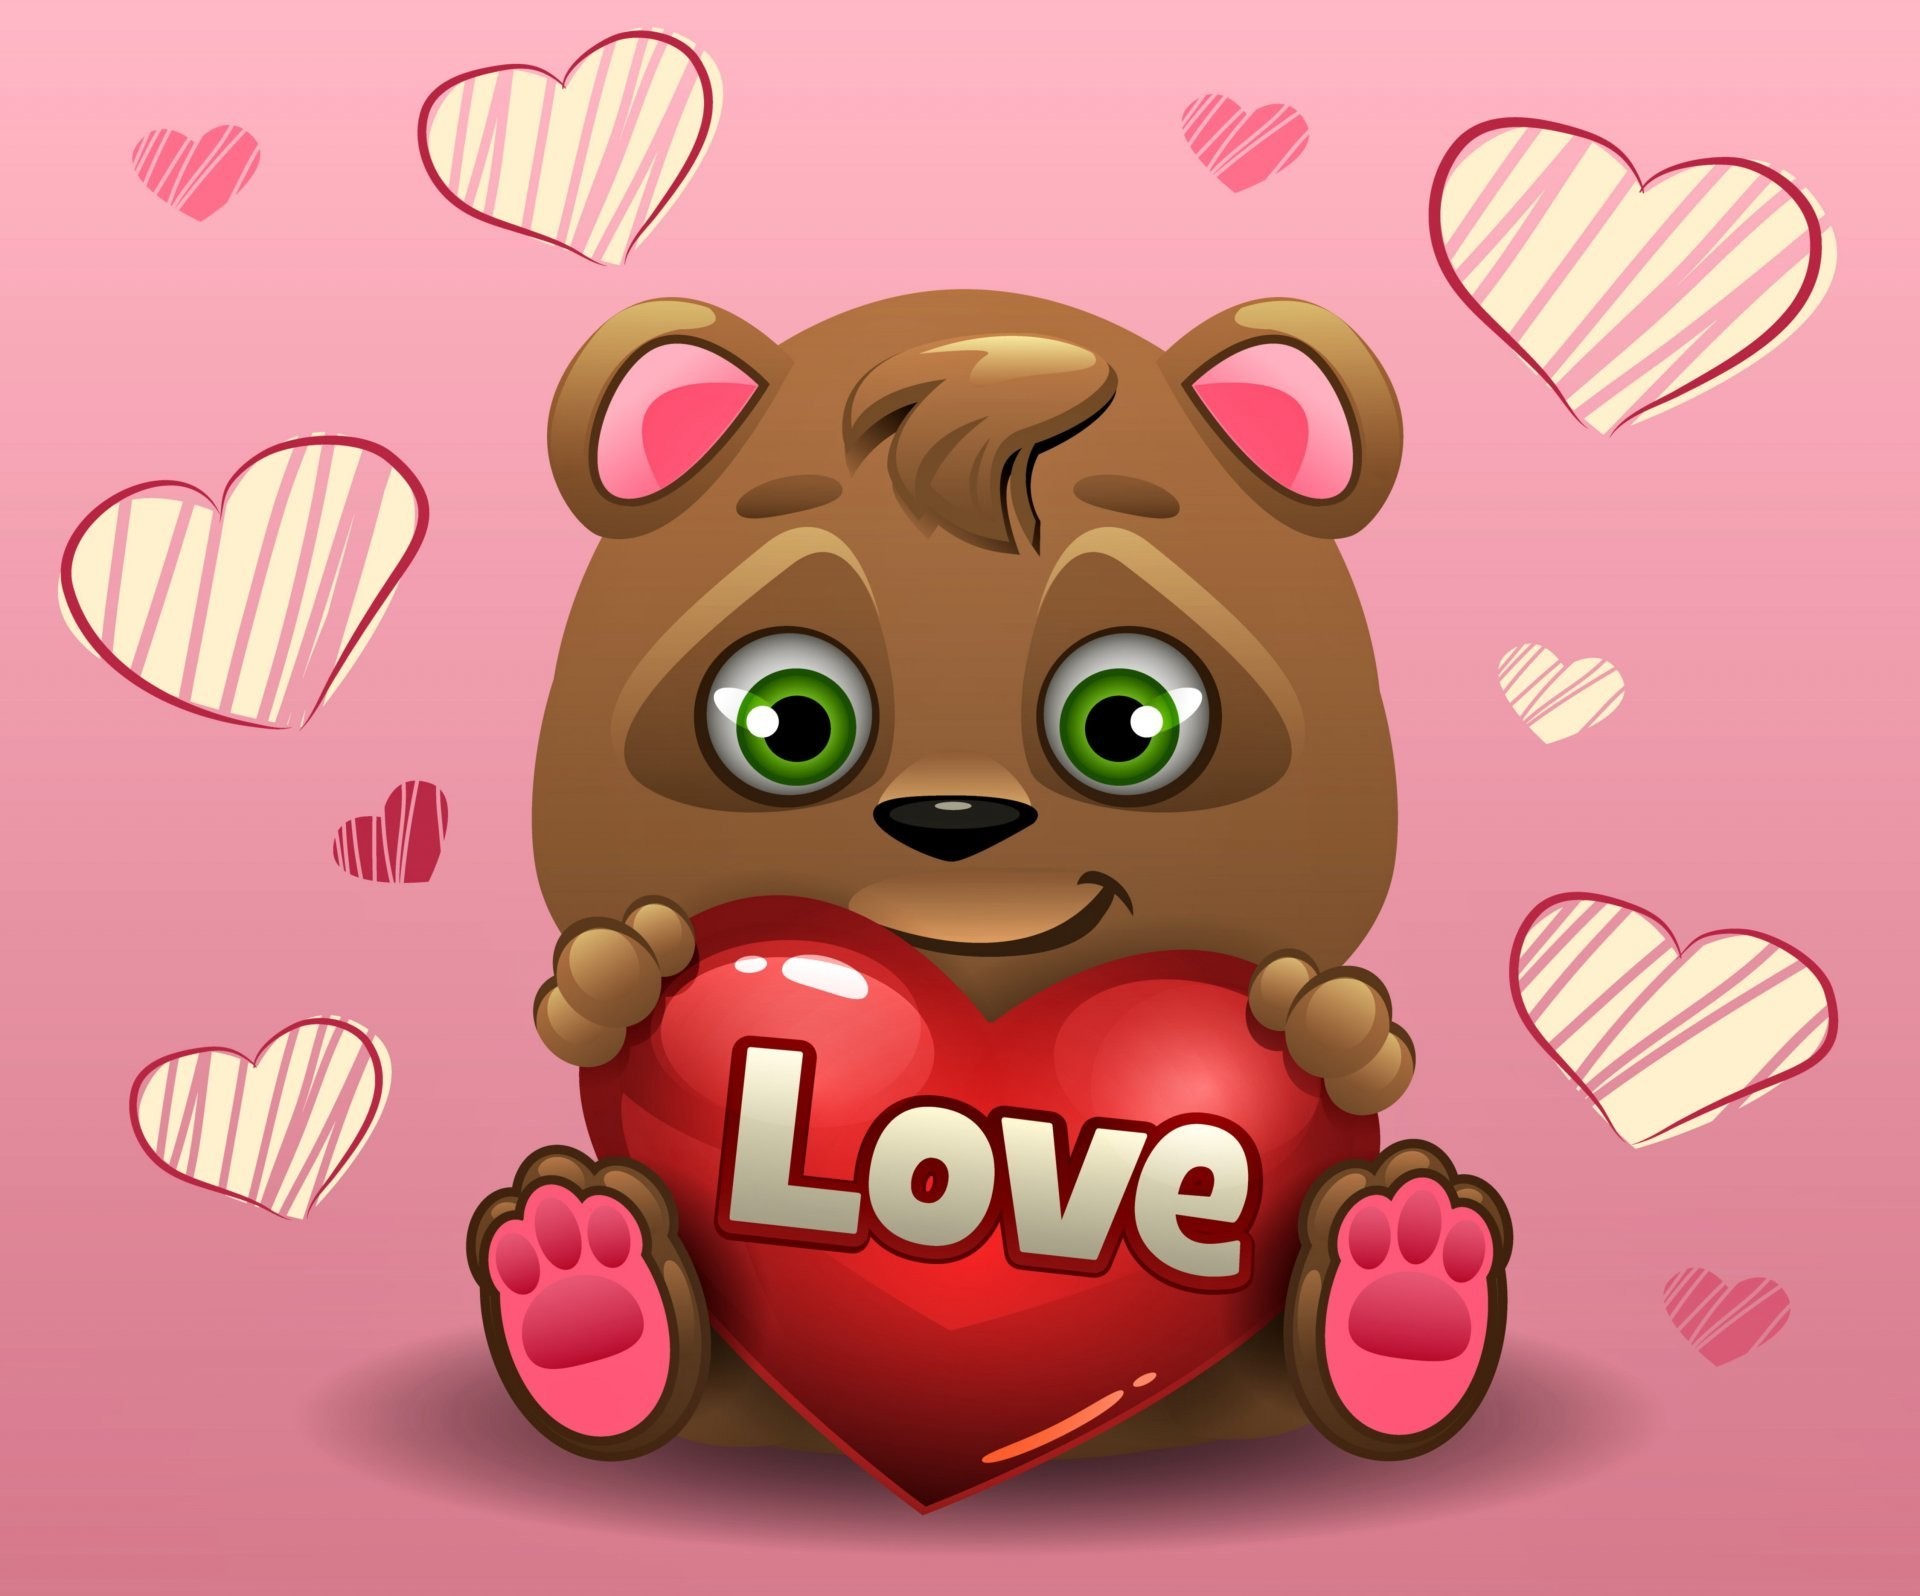 Valentines day love heart romantic teddy bear heart teddy bear